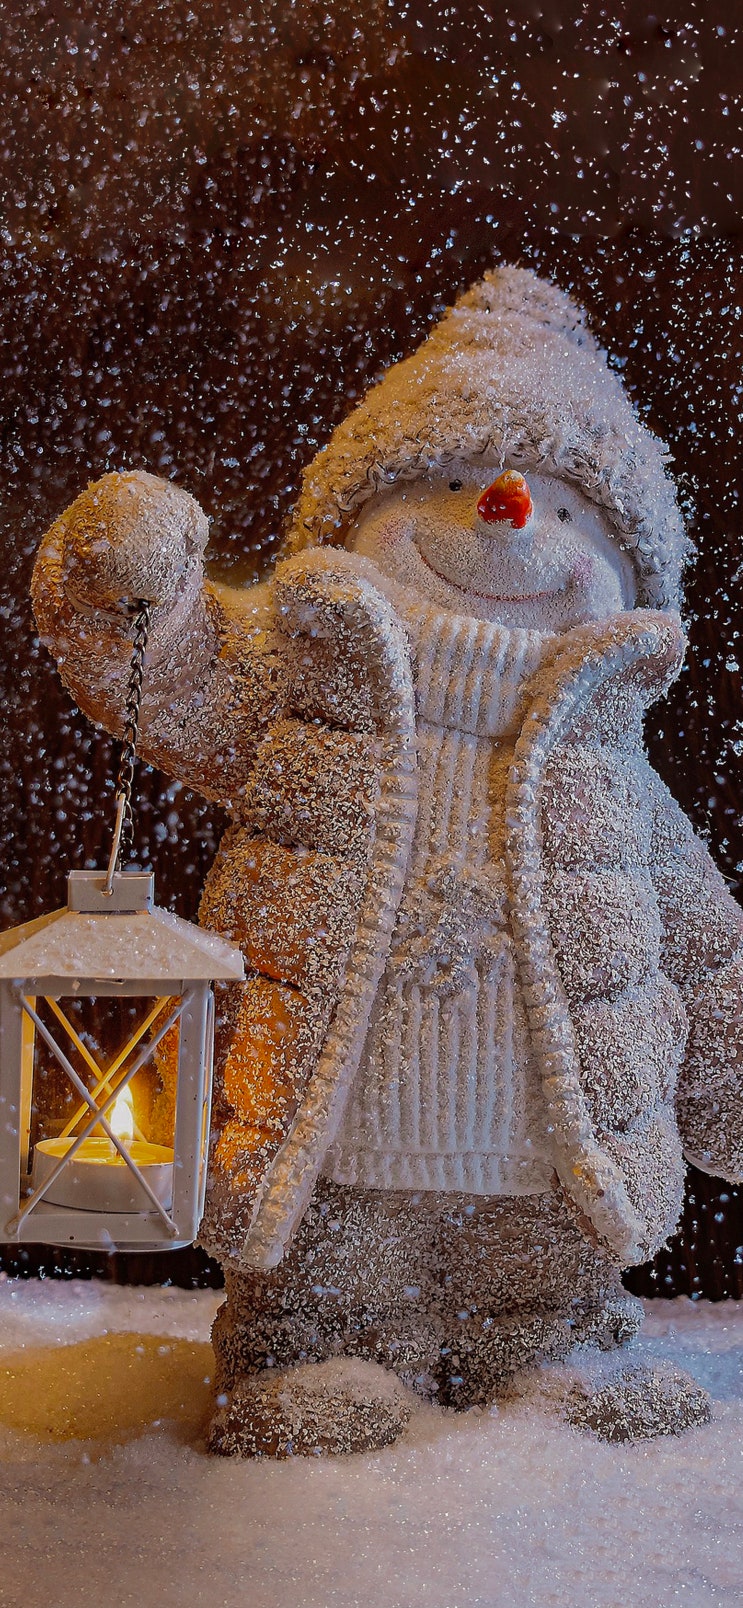 9_크리스마스 겨울 눈사람 아이폰 고화질 배경화면 christmas winter snowman iphone wallpaper background aesthetic hd